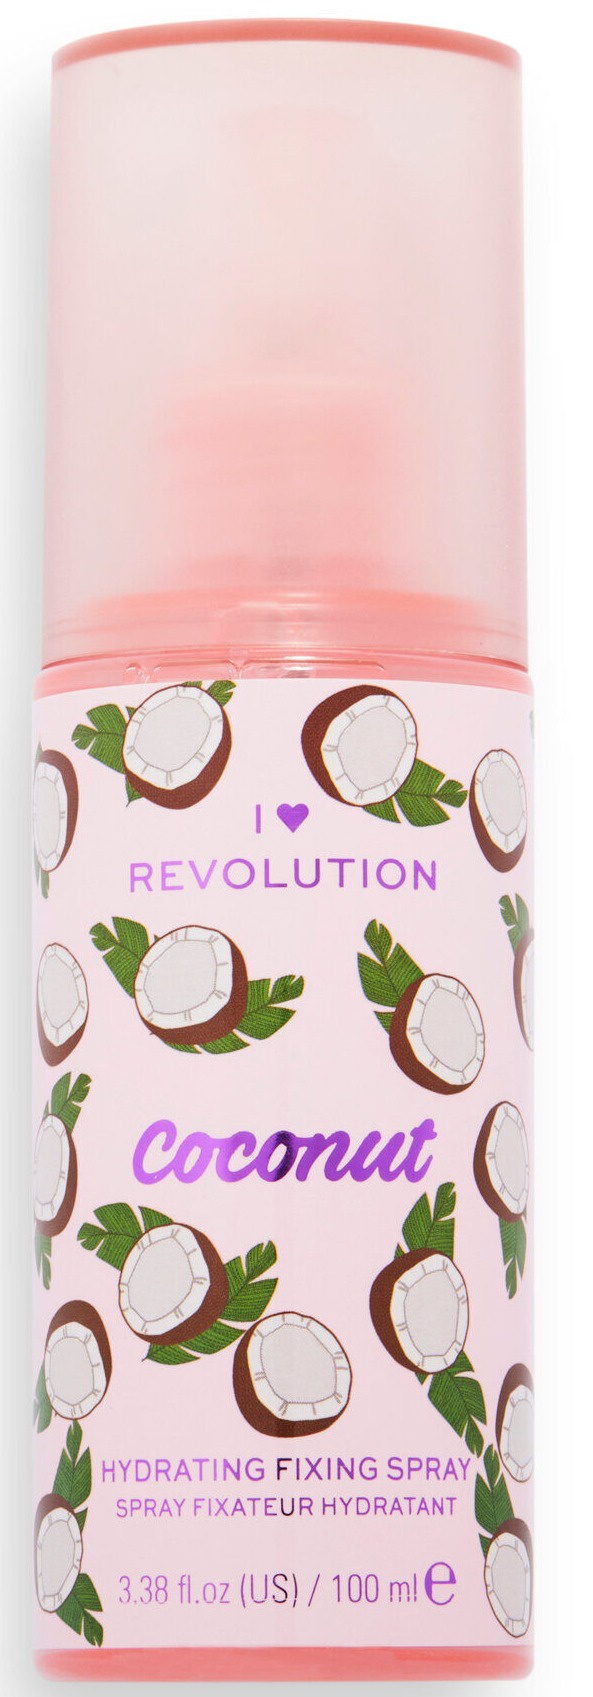 Revolution I Heart Revolution Tasty Coconut Hydrating Fixing Spray